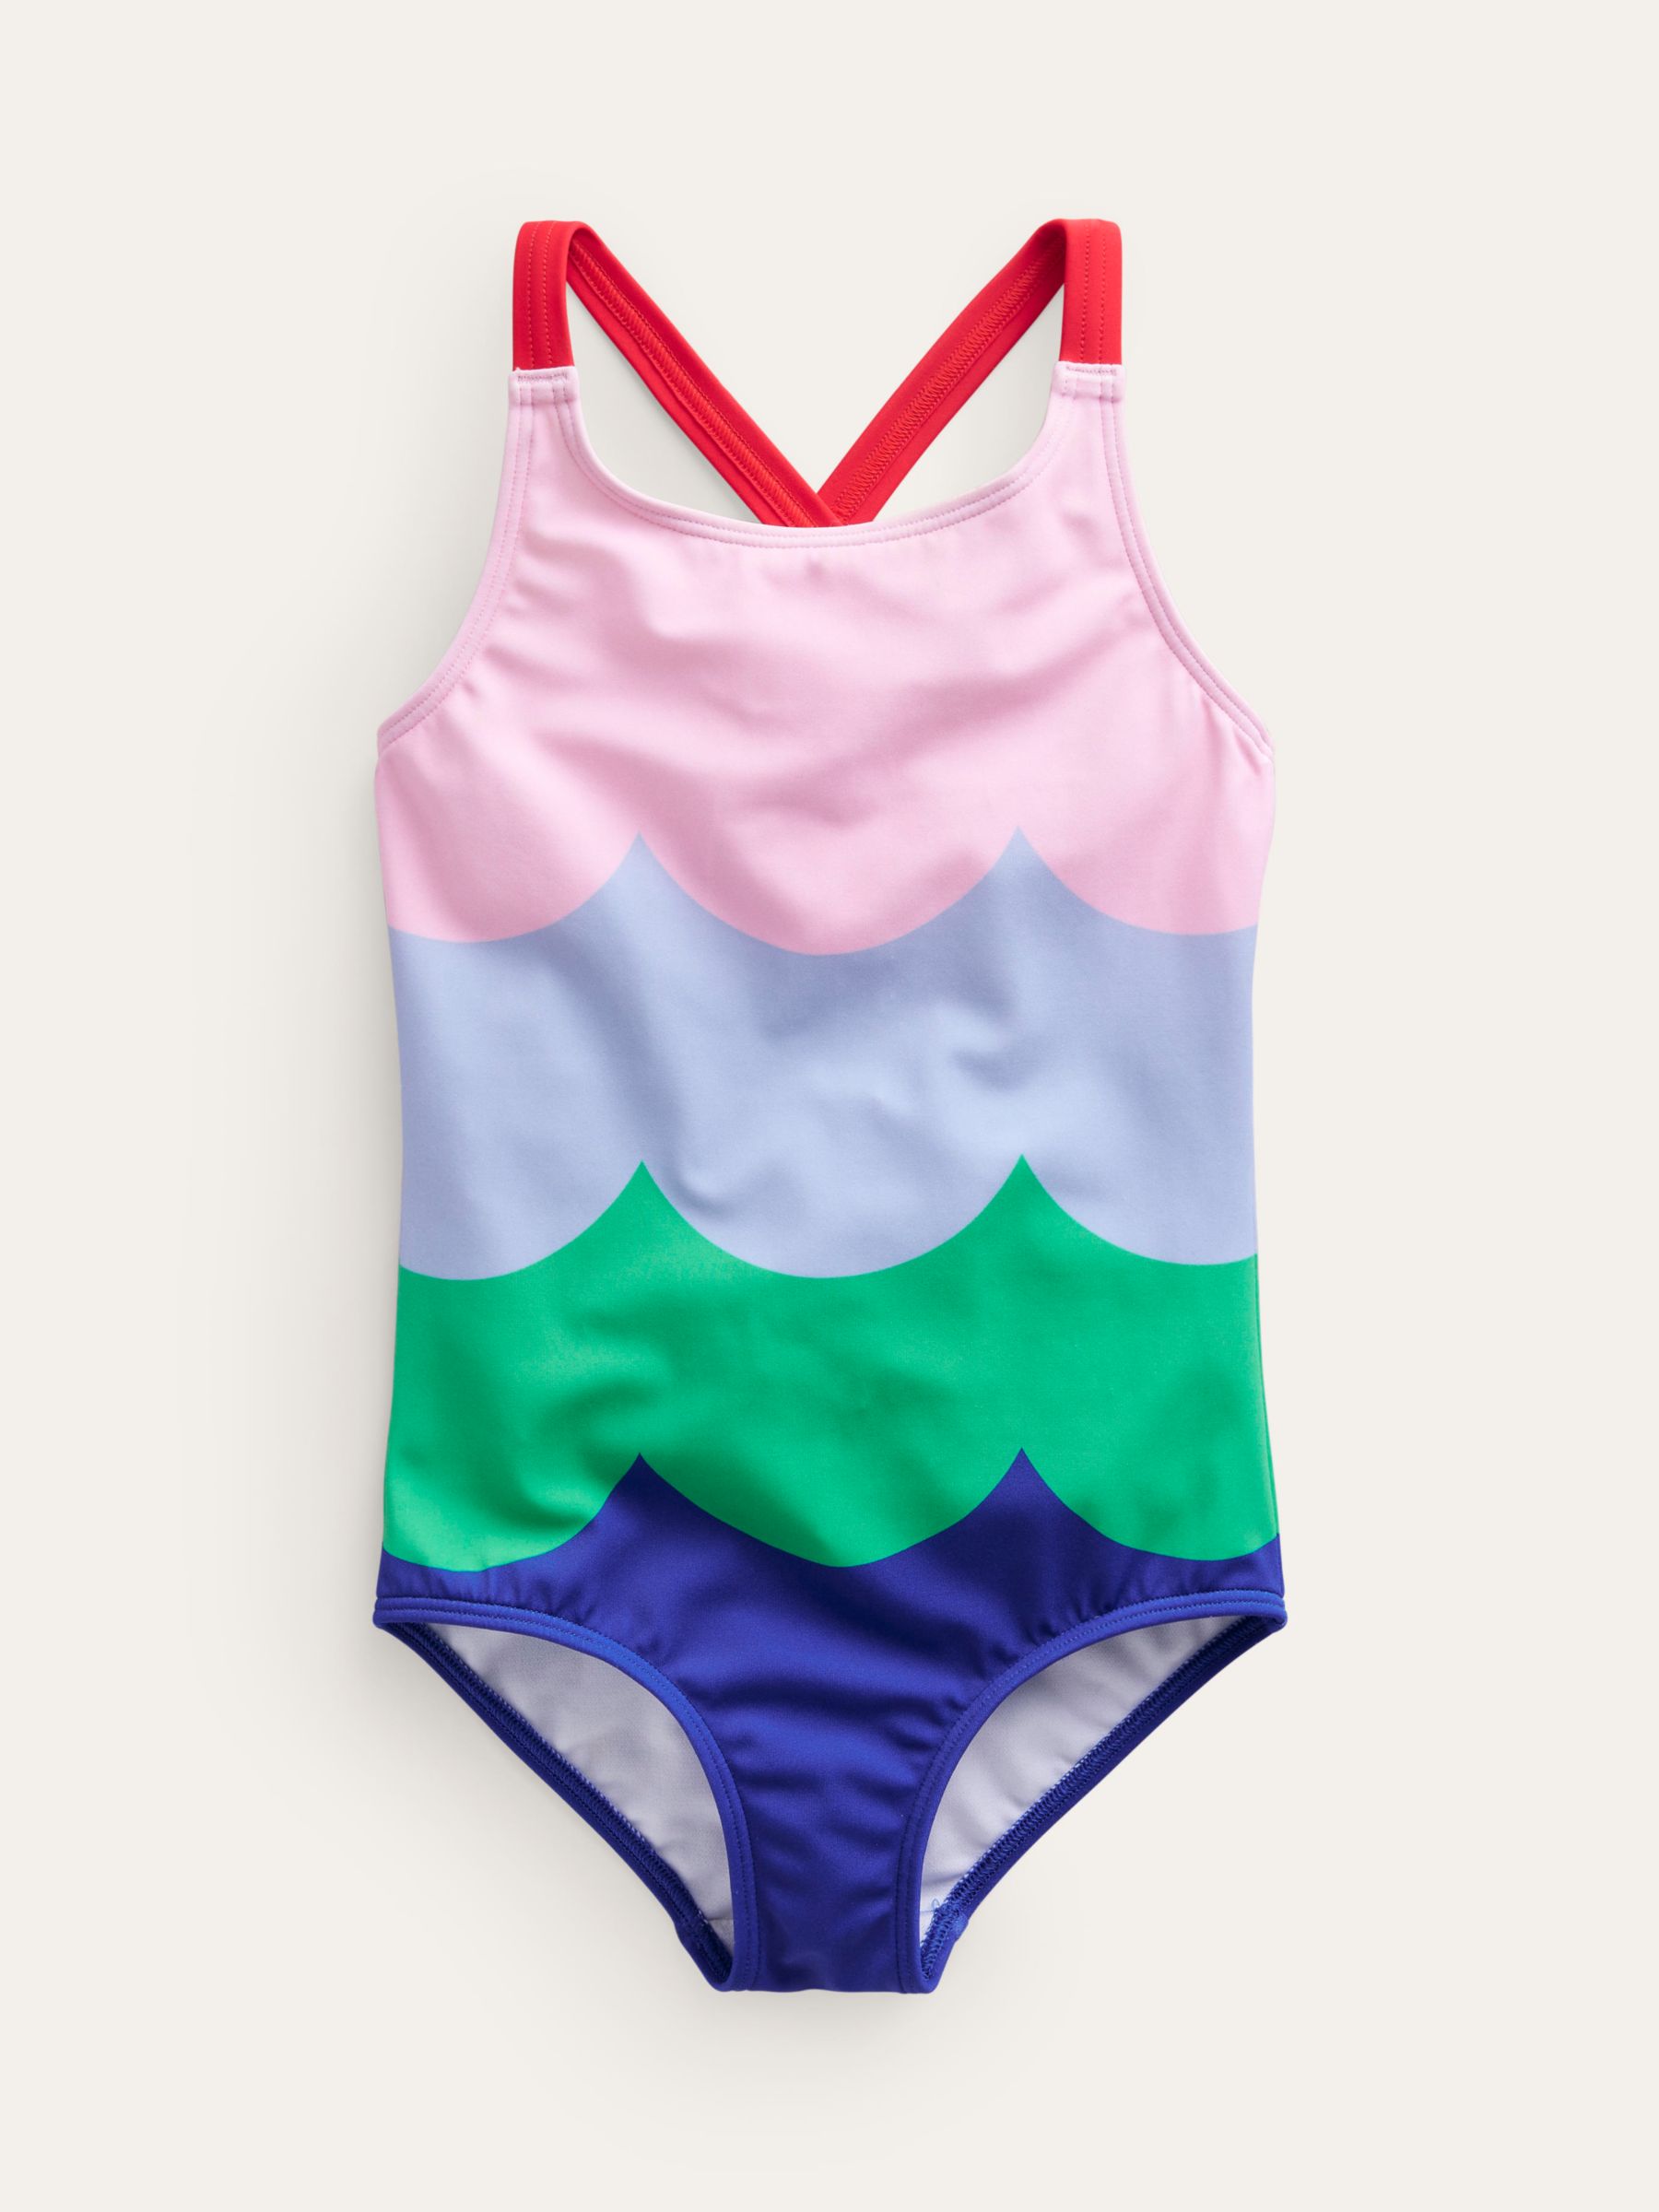 Mini Boden Kids' Cross-Back Wave Stripe Print Swimsuit, Multi, 3-4 years